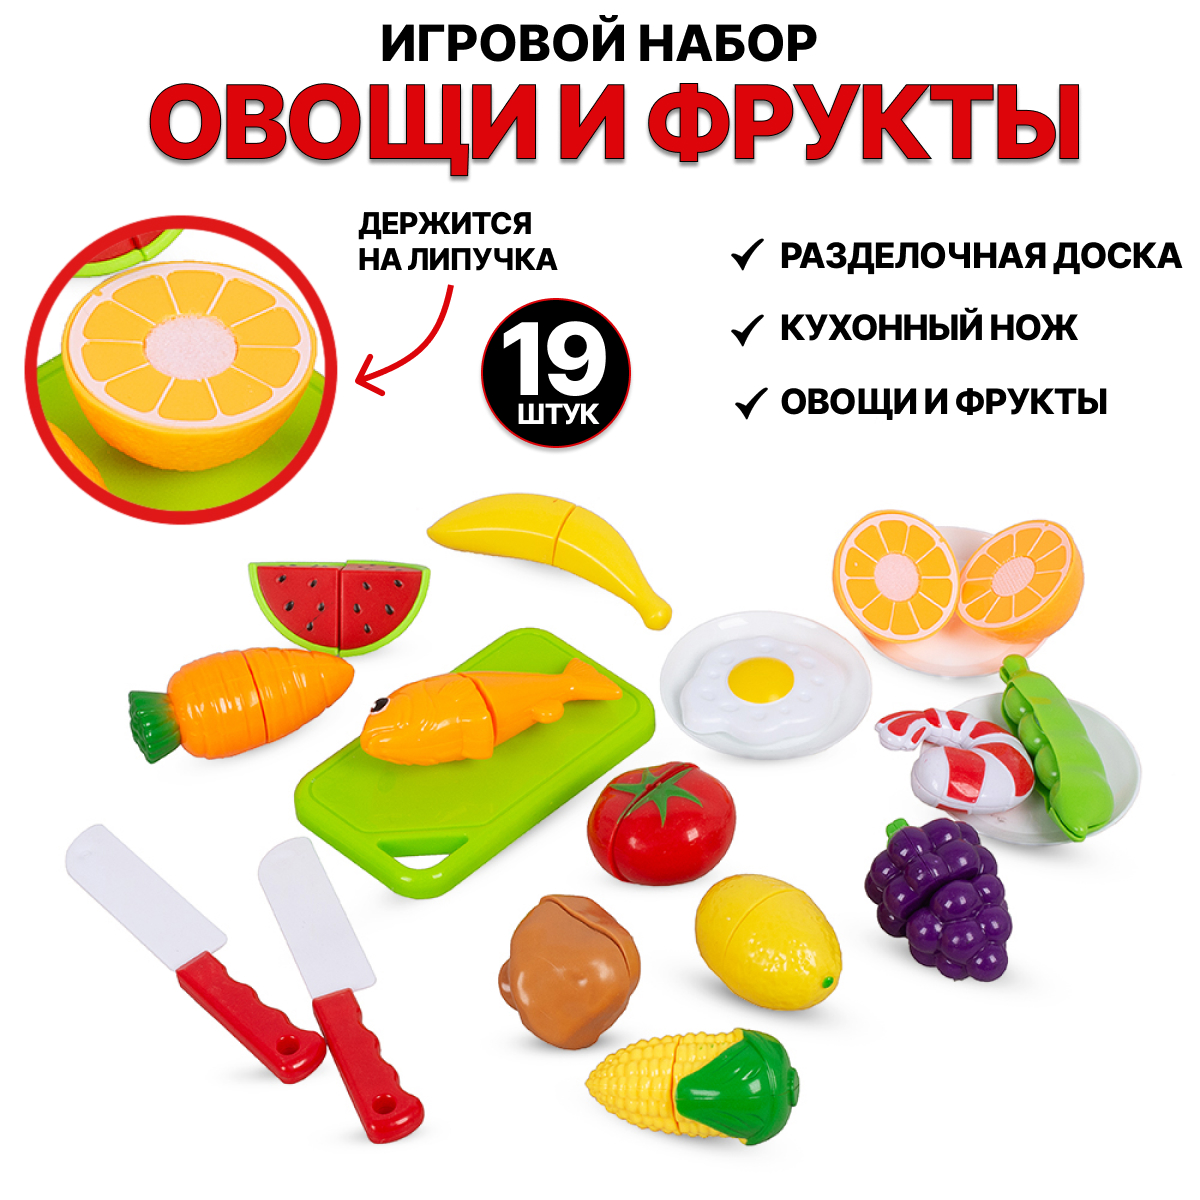 Игровой набор Tongde Овощи и фрукты для резки на липучках 19 предметов 666-85 игровой набор для резки 7 предметов пленка